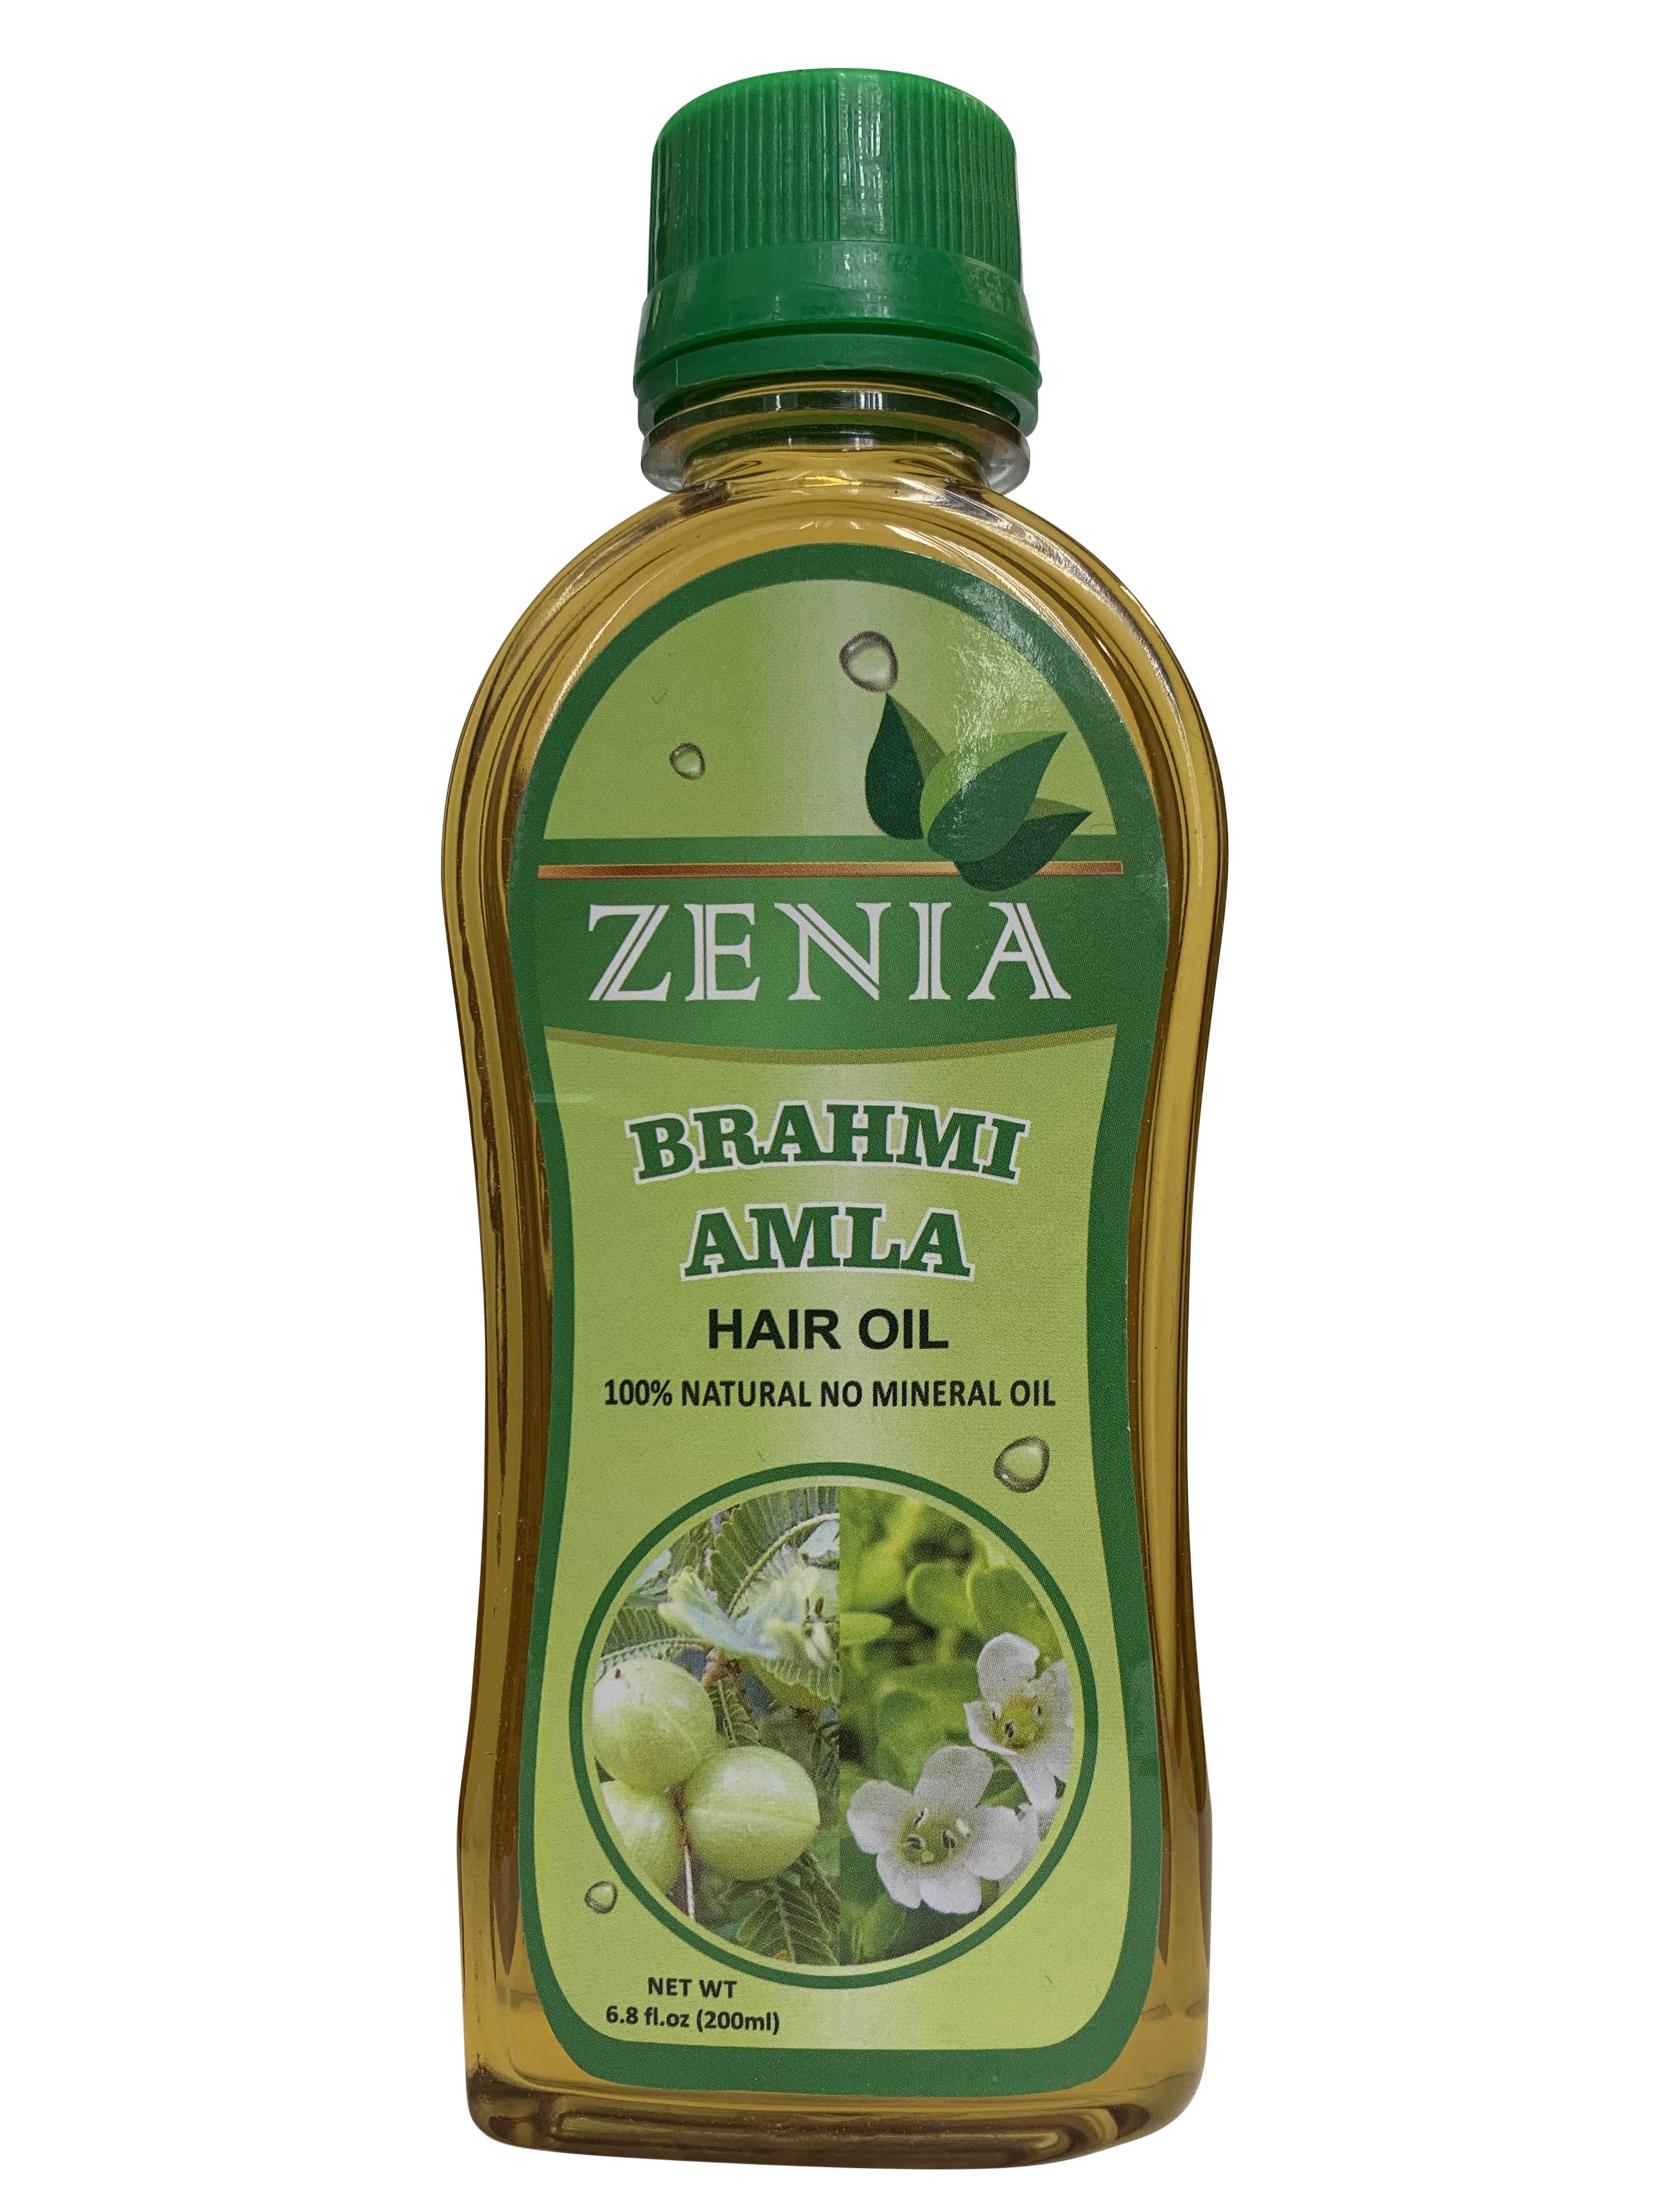 Zenia Brahmi Amla Hair Oil 100% Natural for Hair Growth, Strong & Healthy Hair 200ml